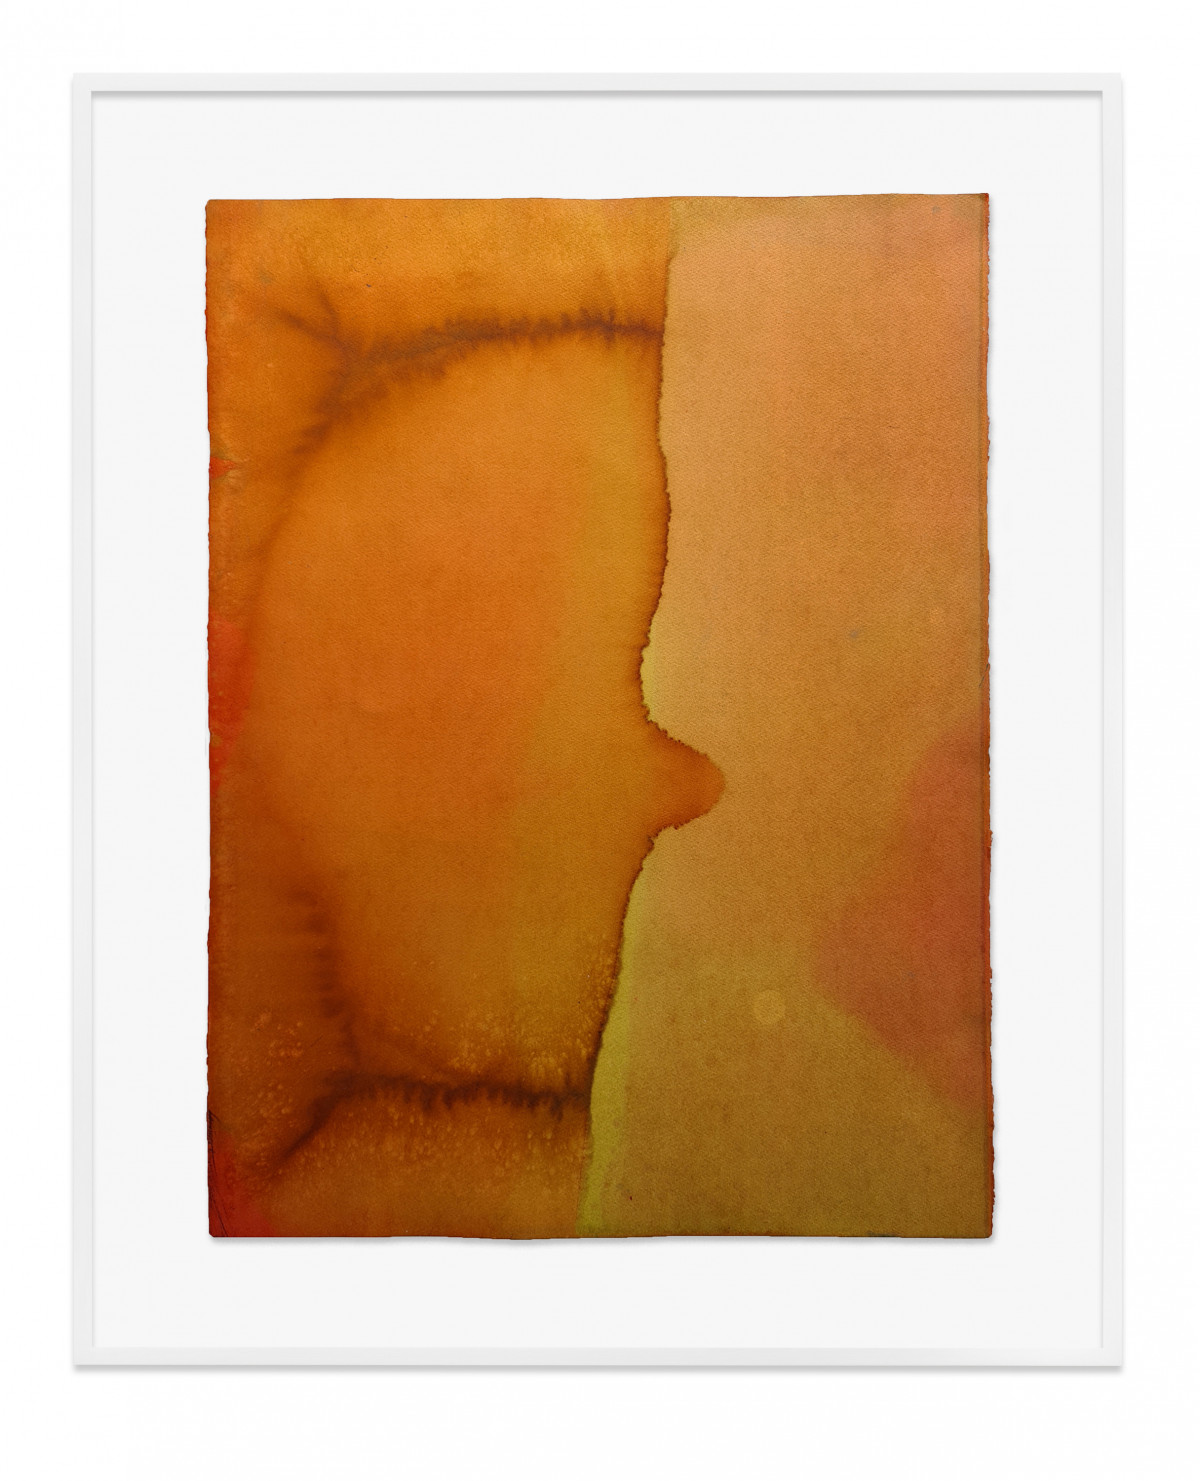 Jason Martin, ‘Untitled (Pale orange)’, 2020